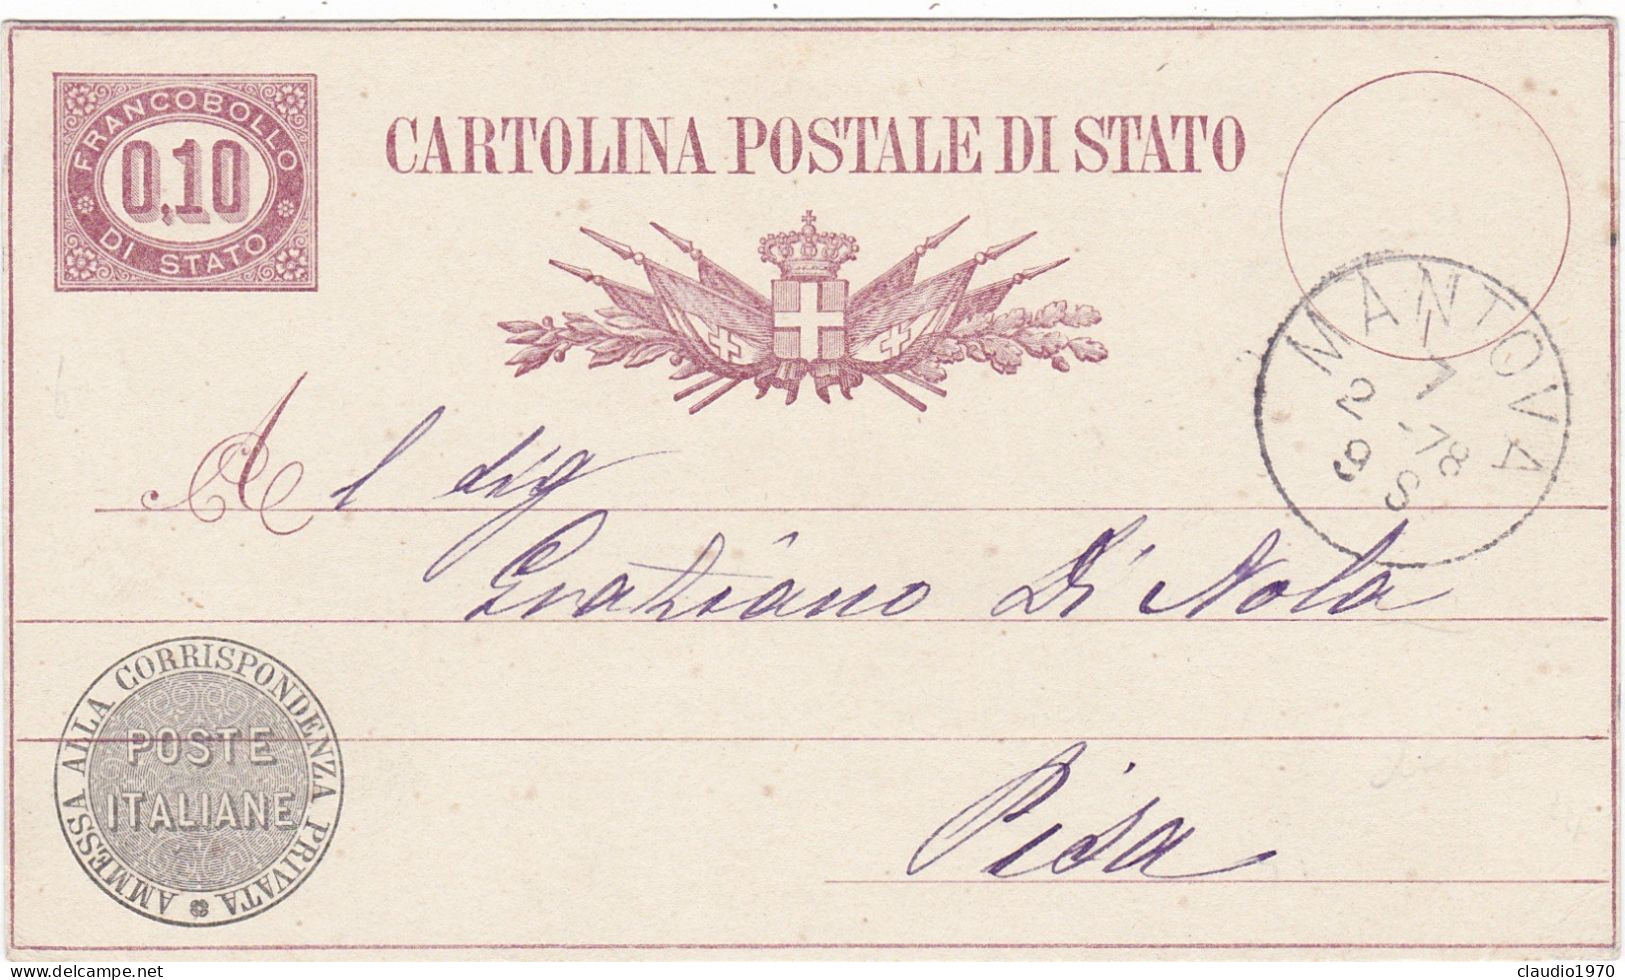 ITALIA - REGNO - MANTOVA - CARTOLINA POSTALE DI STATO C. 0.10 - VG PER PISA -1878 - Entiers Postaux